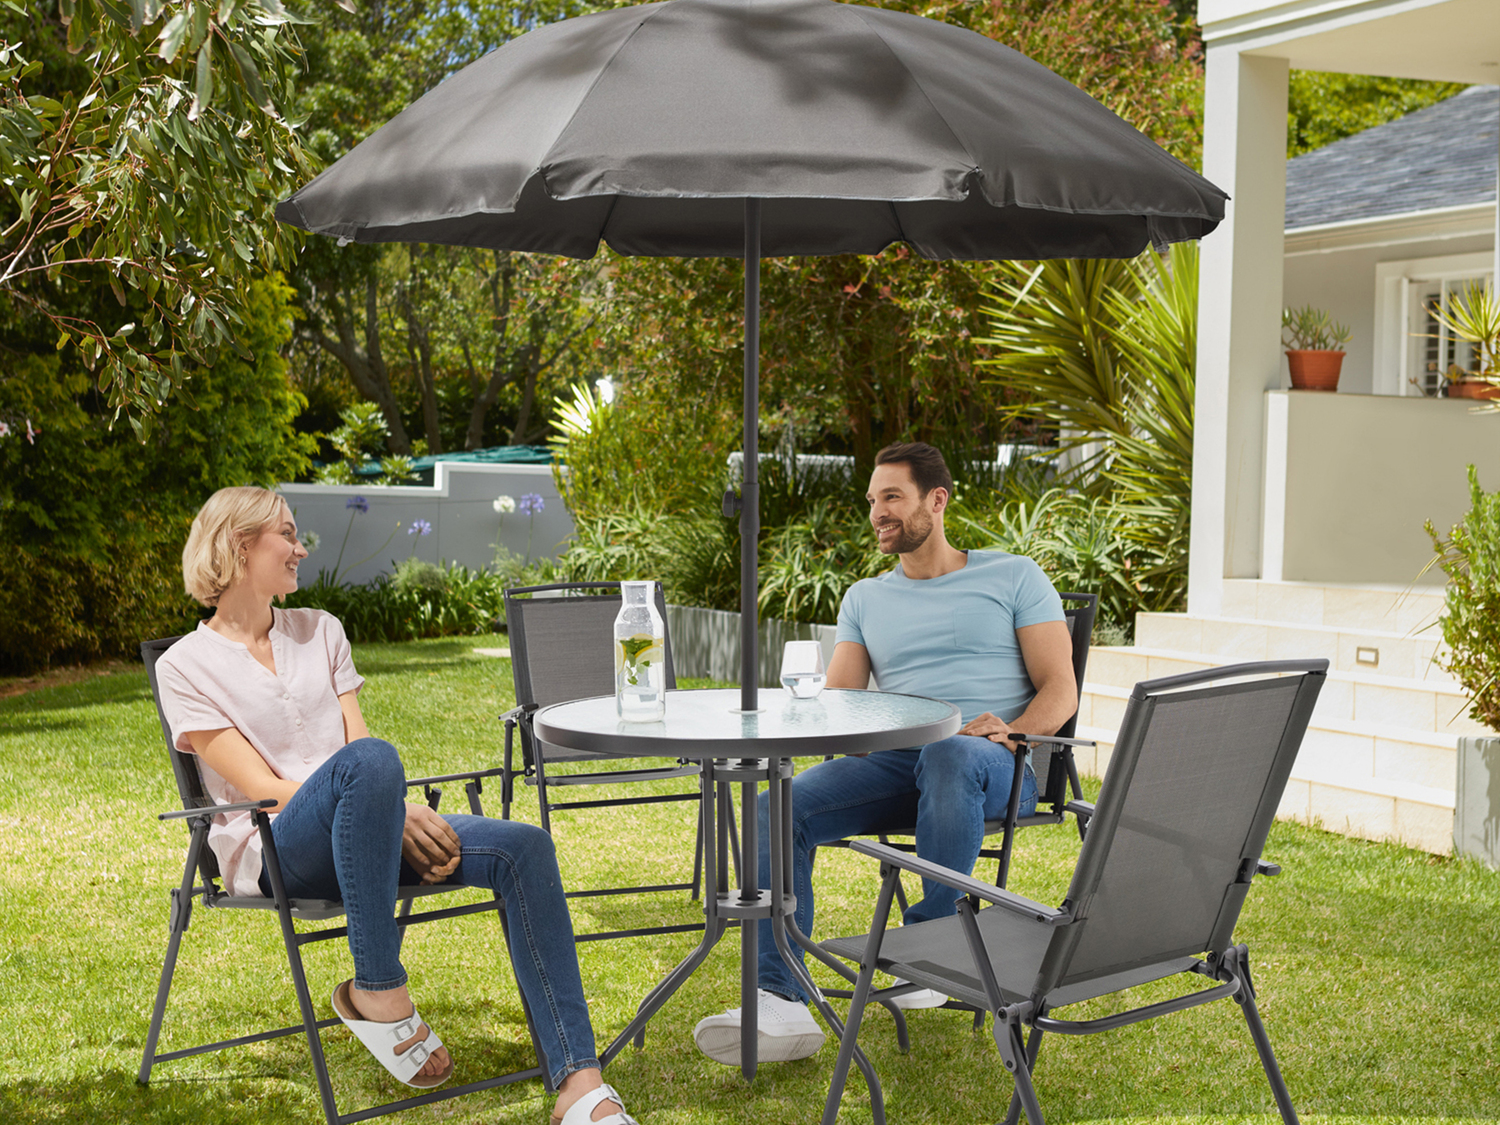 Set tavolo con ombrellone e sedie da giardino Livarno, prezzo 149.00 &#8364; ...